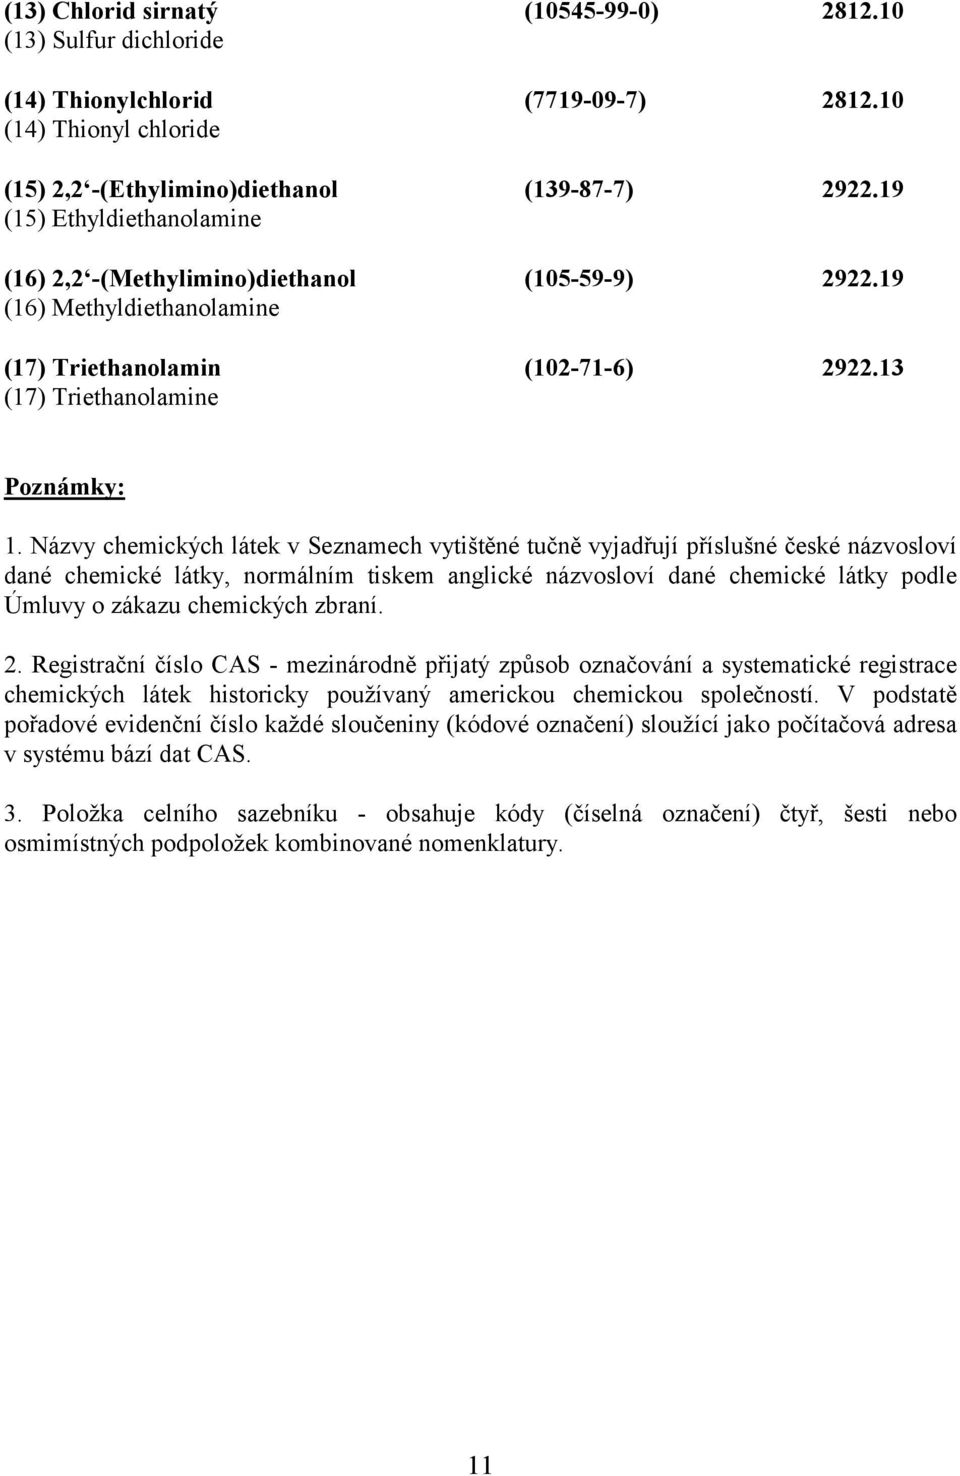 Názvy chemických látek v Seznamech vytištěné tučně vyjadřují příslušné české názvosloví dané chemické látky, normálním tiskem anglické názvosloví dané chemické látky podle Úmluvy o zákazu chemických